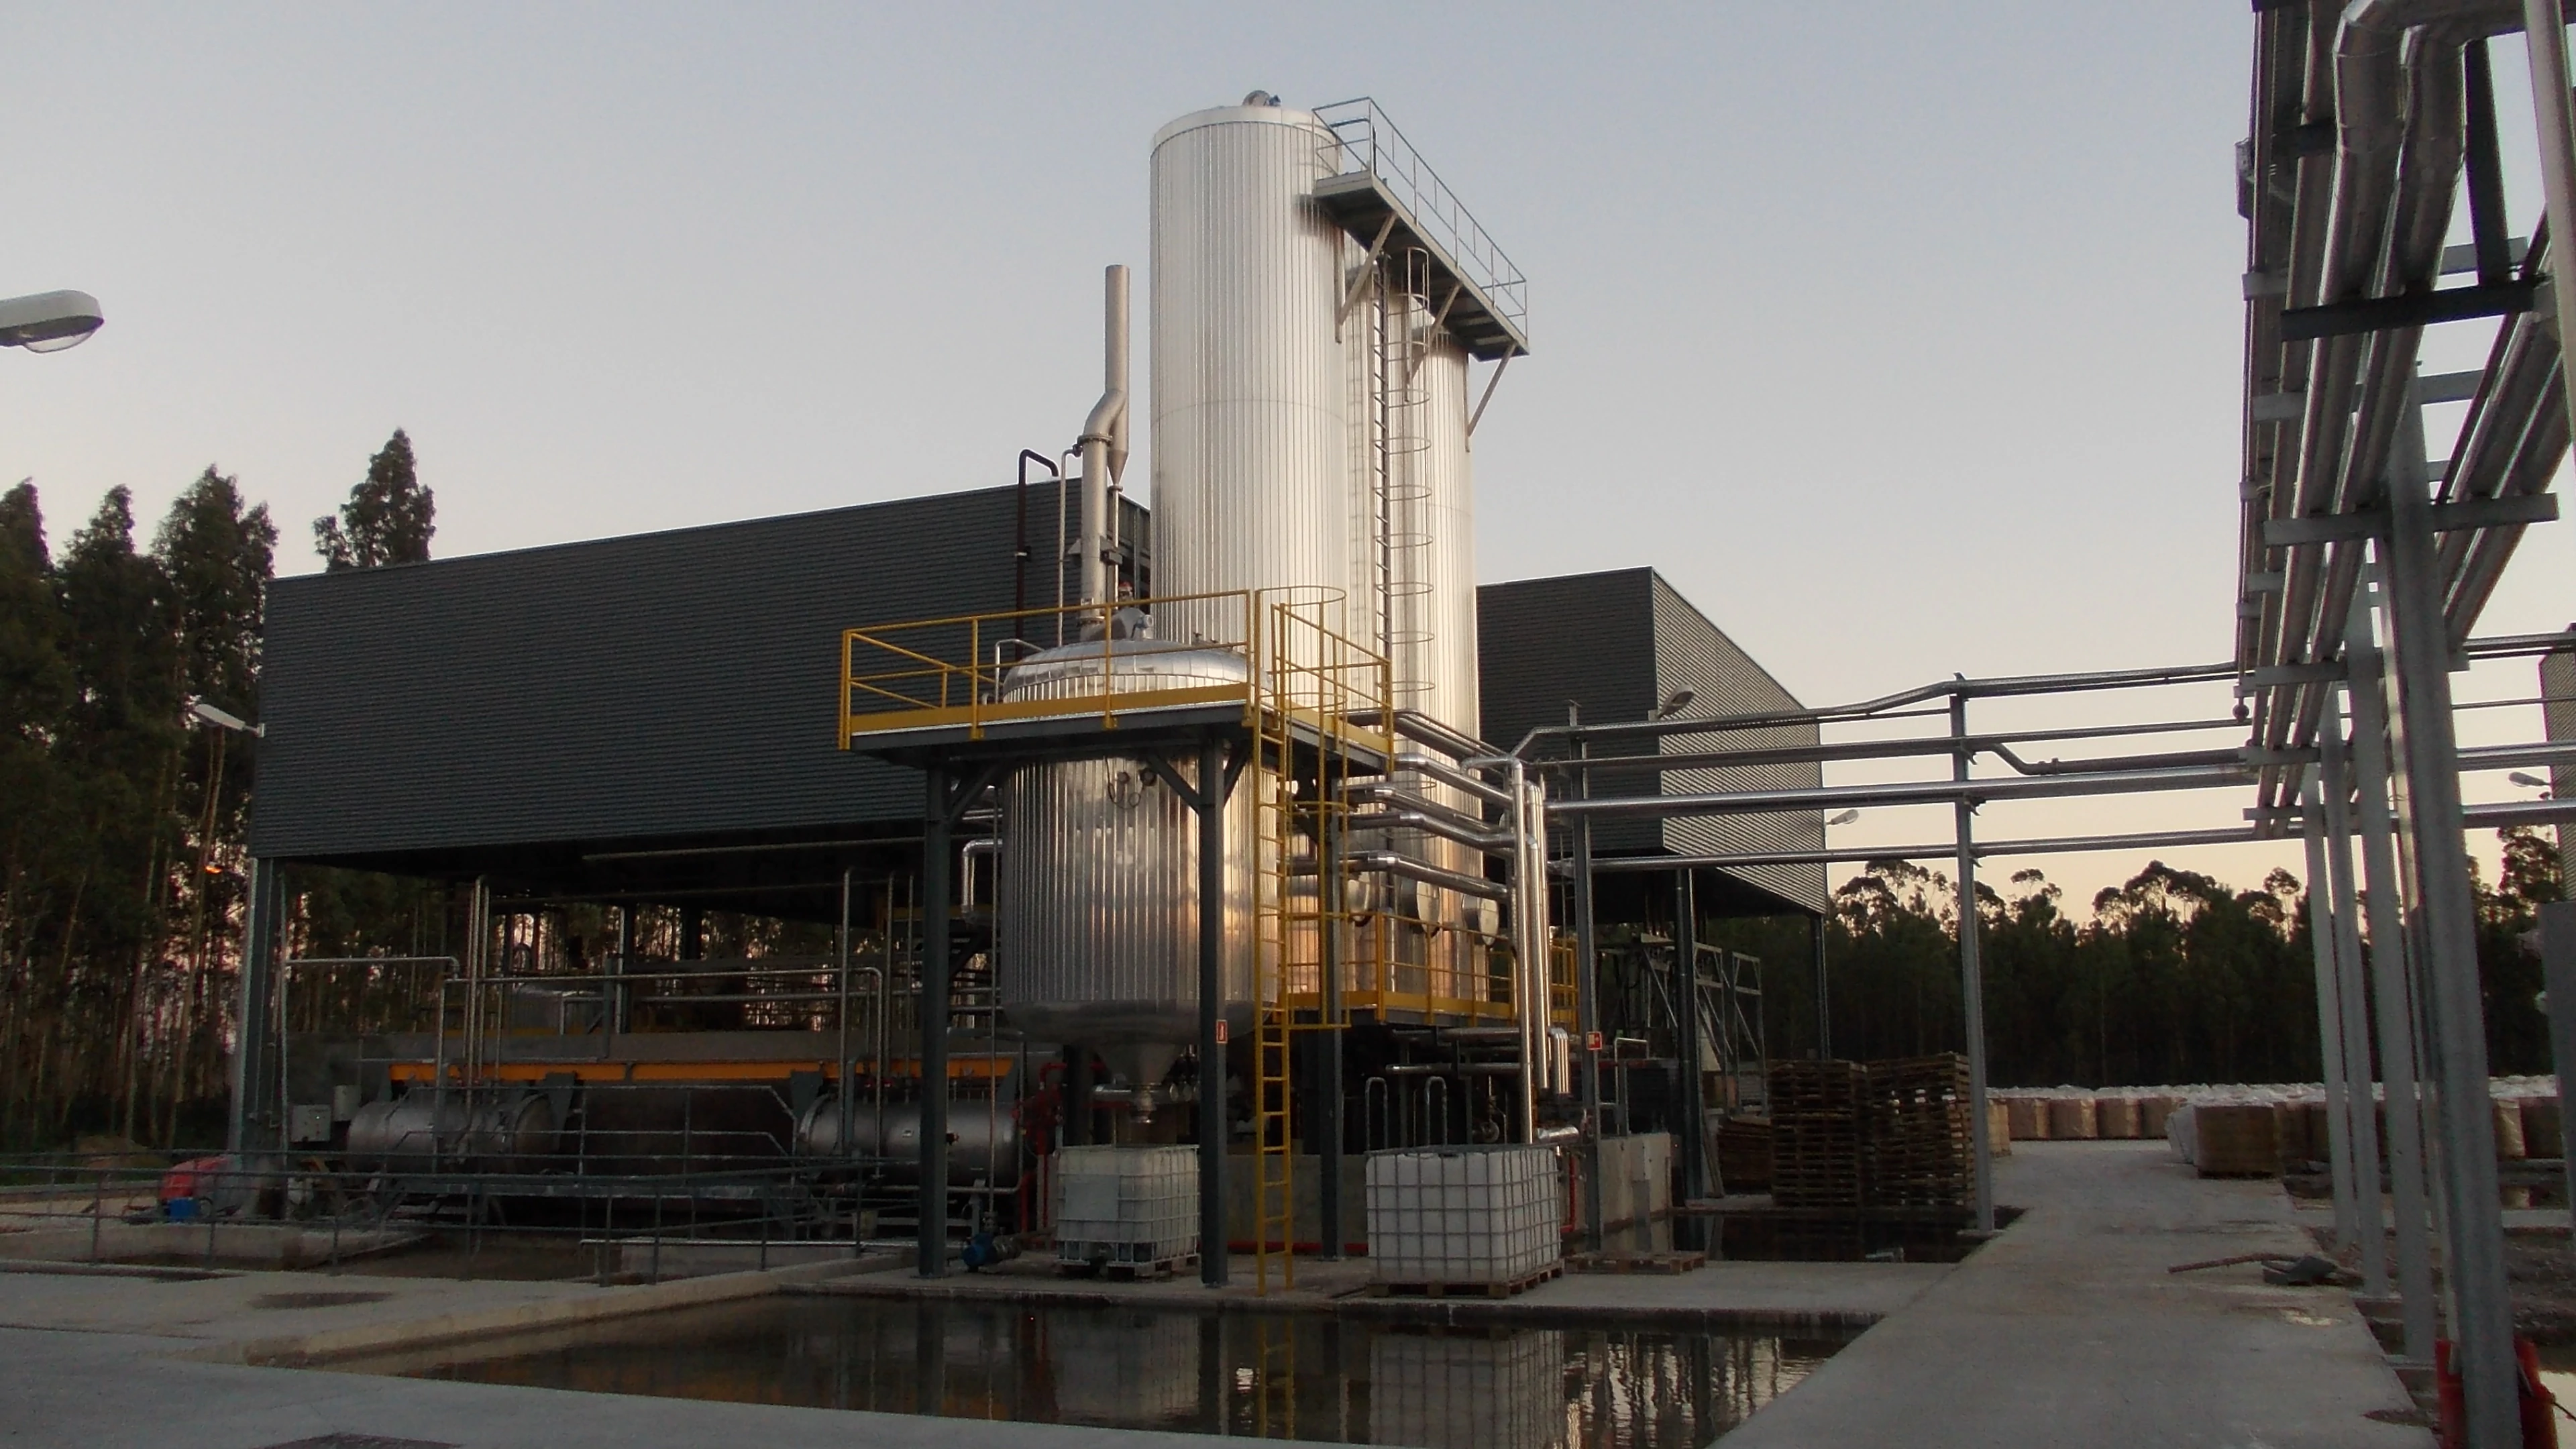 Unidade de destilação de resinas e derivados - Indústria química